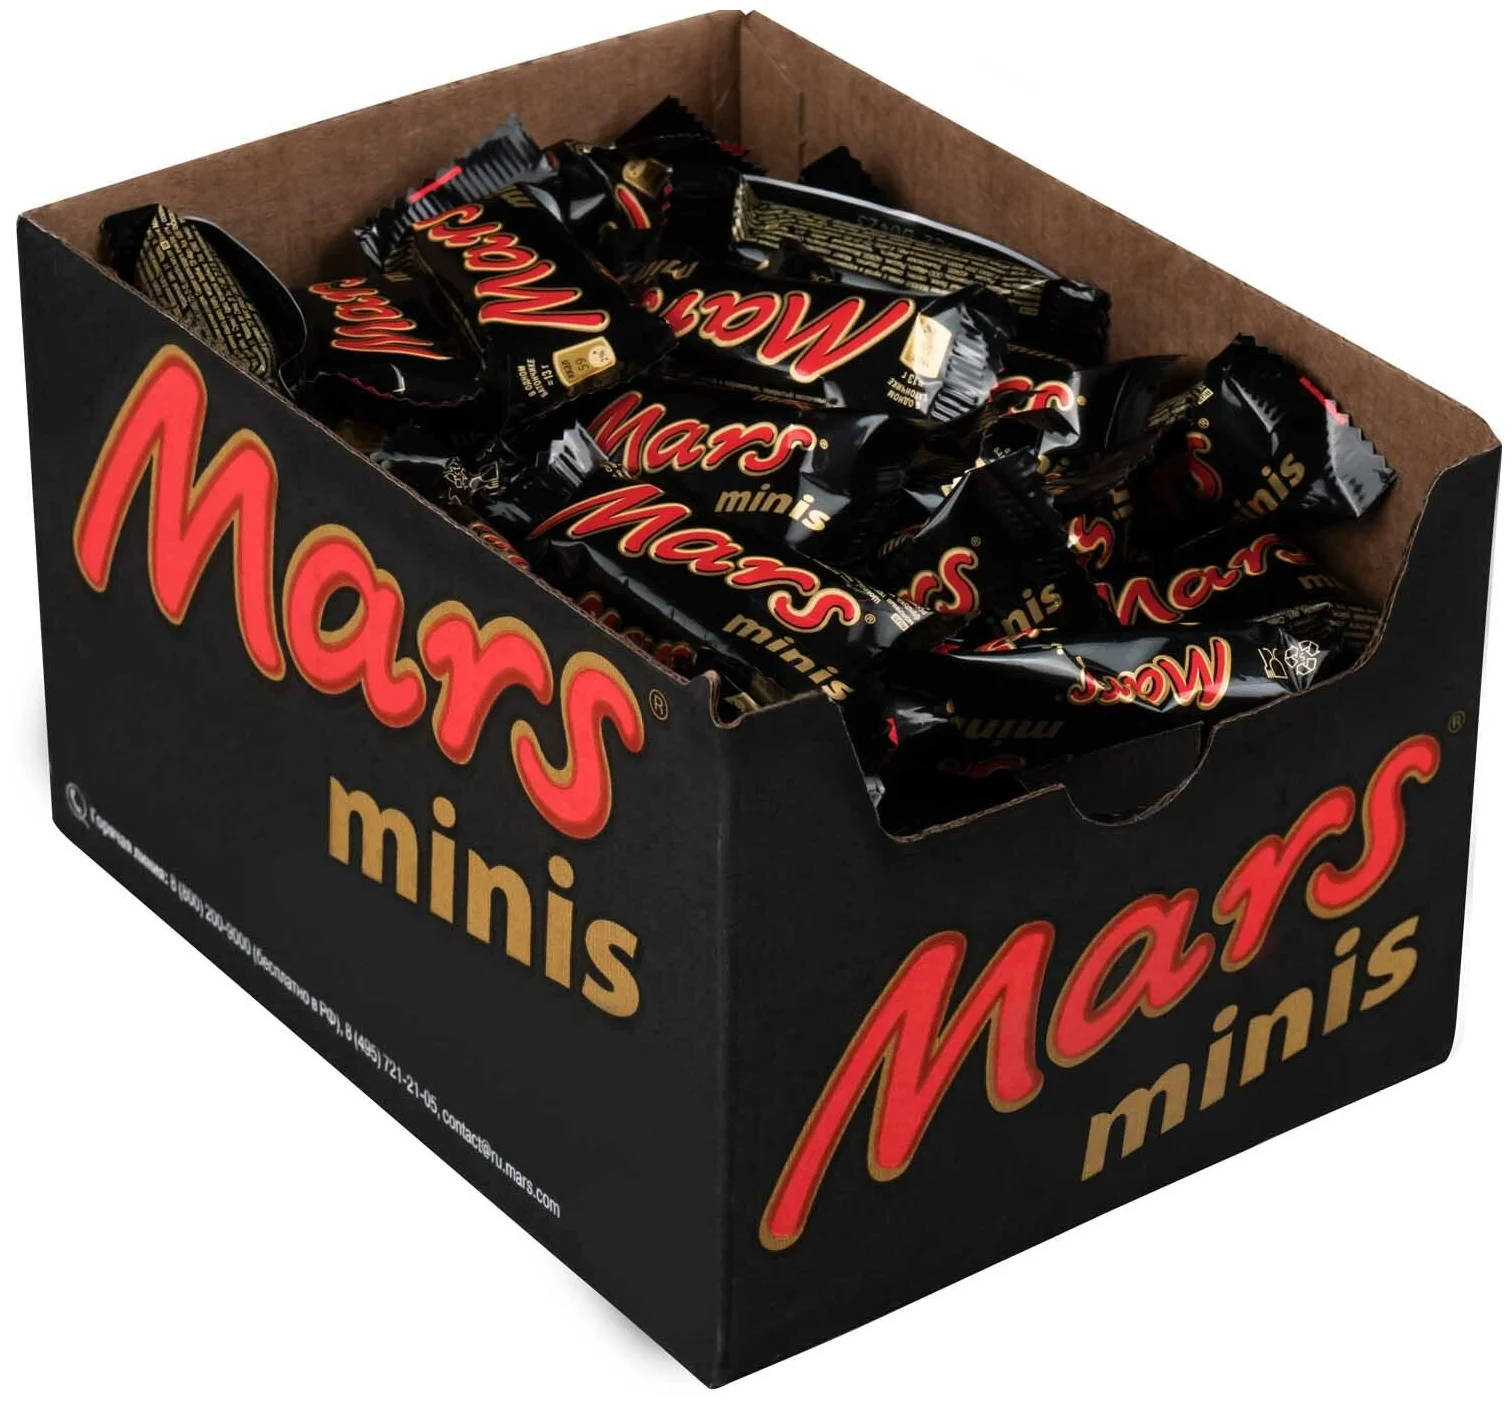 Mars minis - жиры в 100 г: 17.7 г